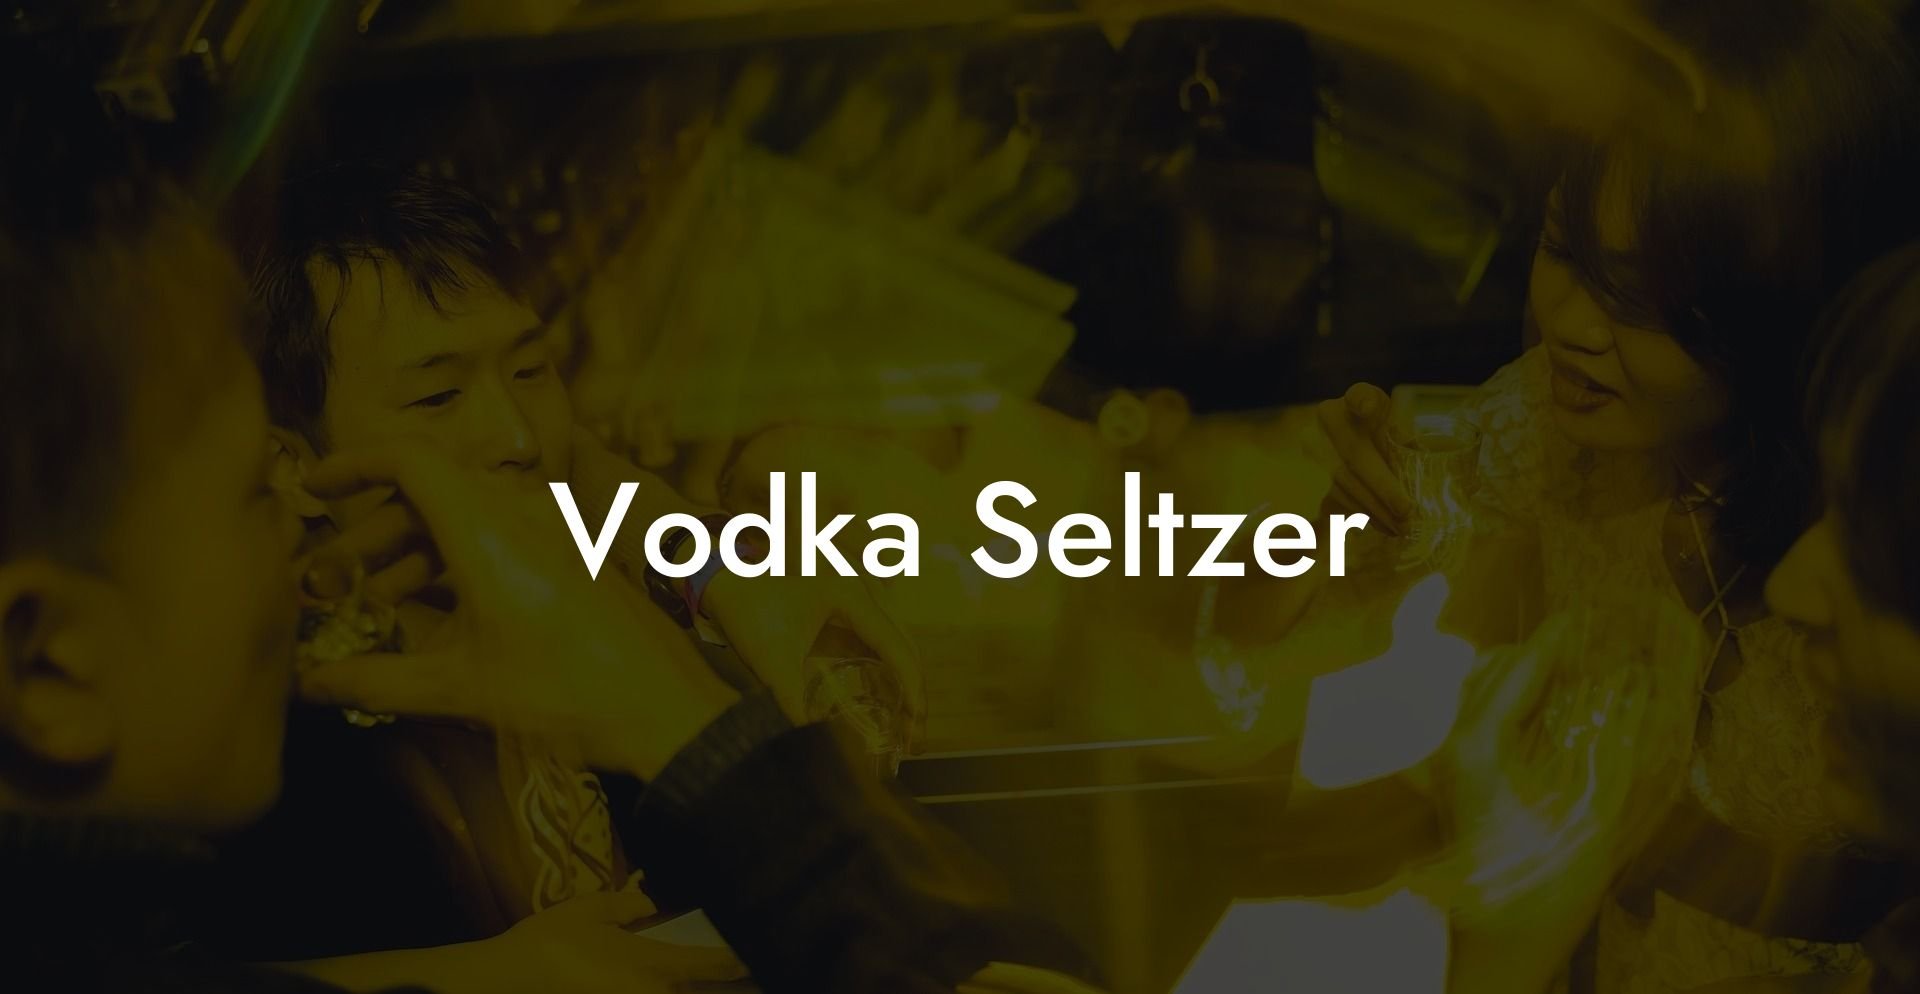 Vodka Seltzer